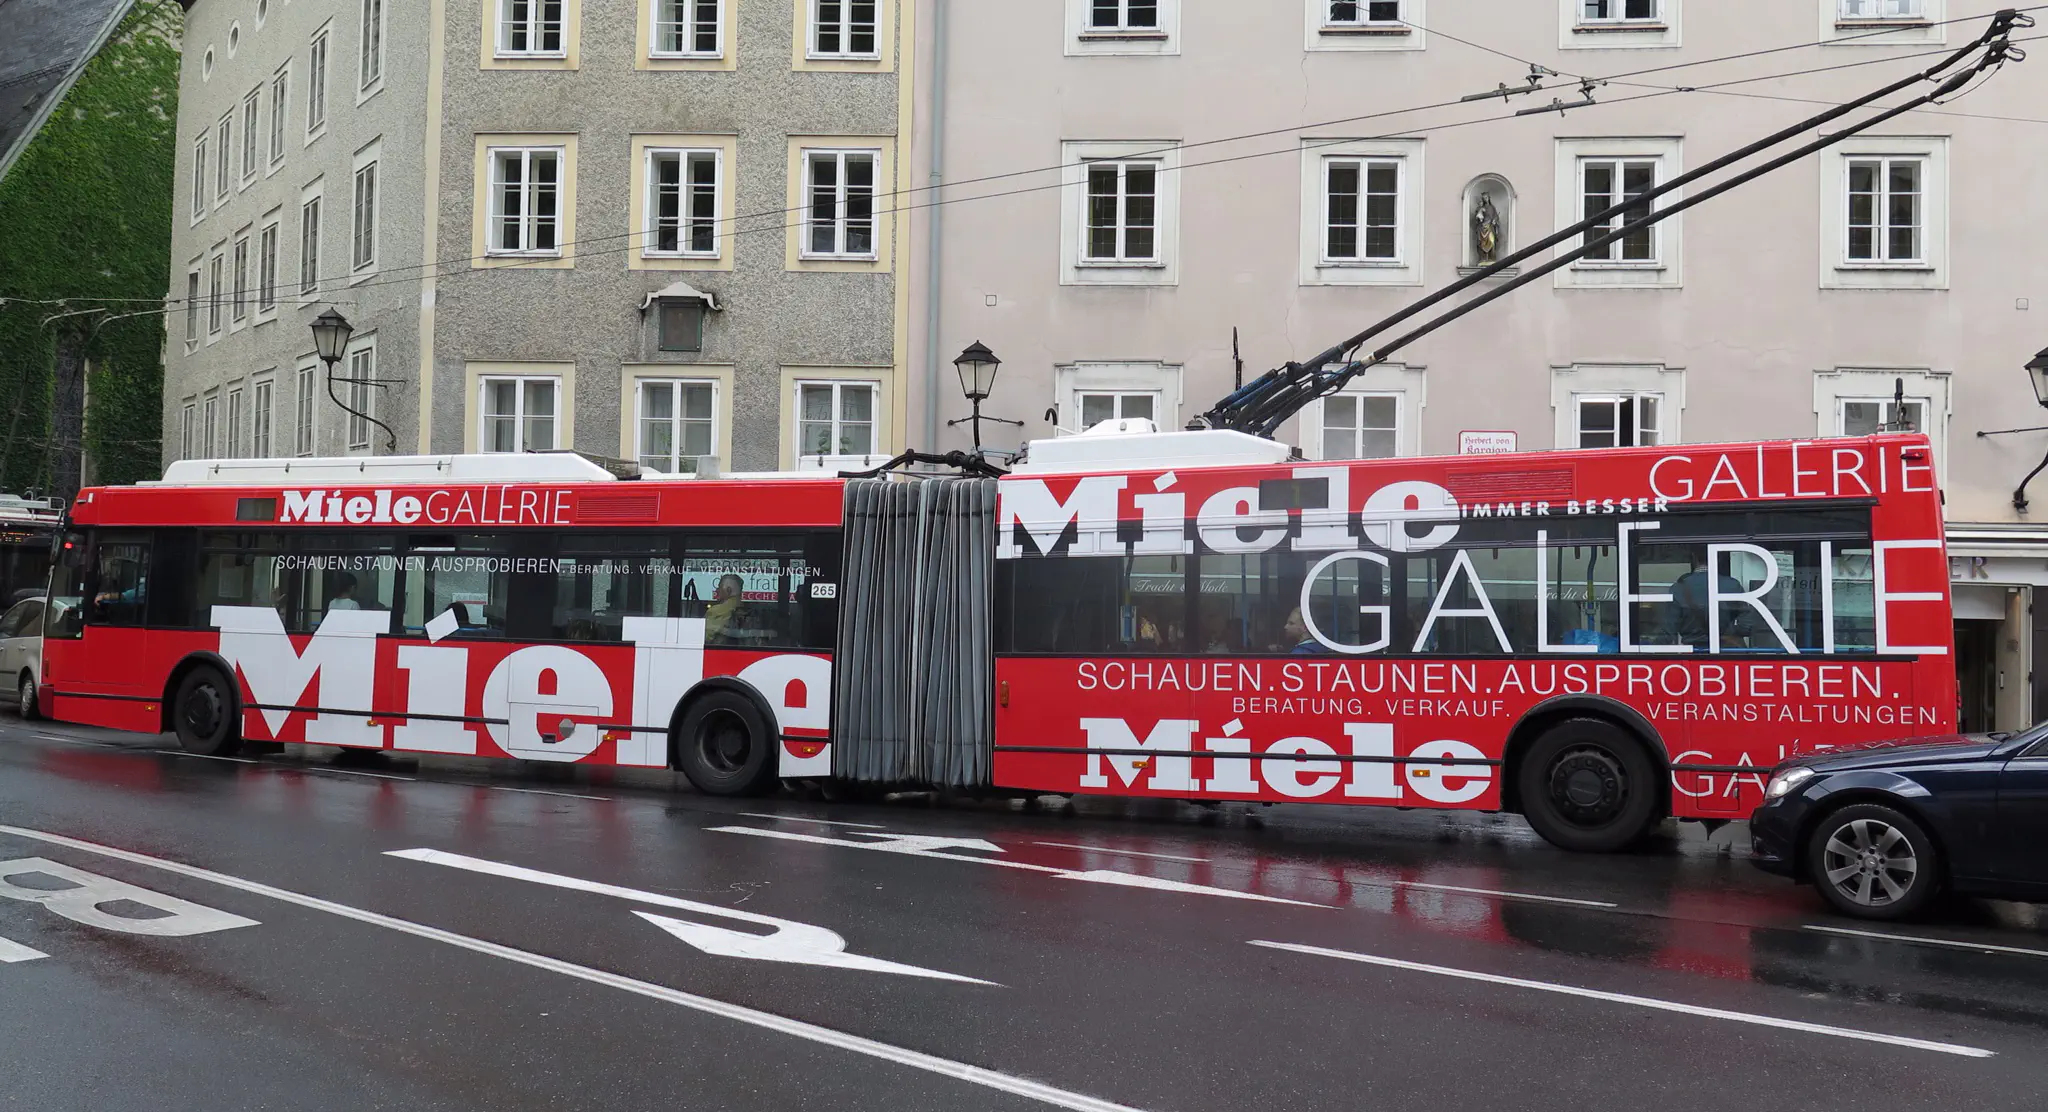 O bus in salzburg